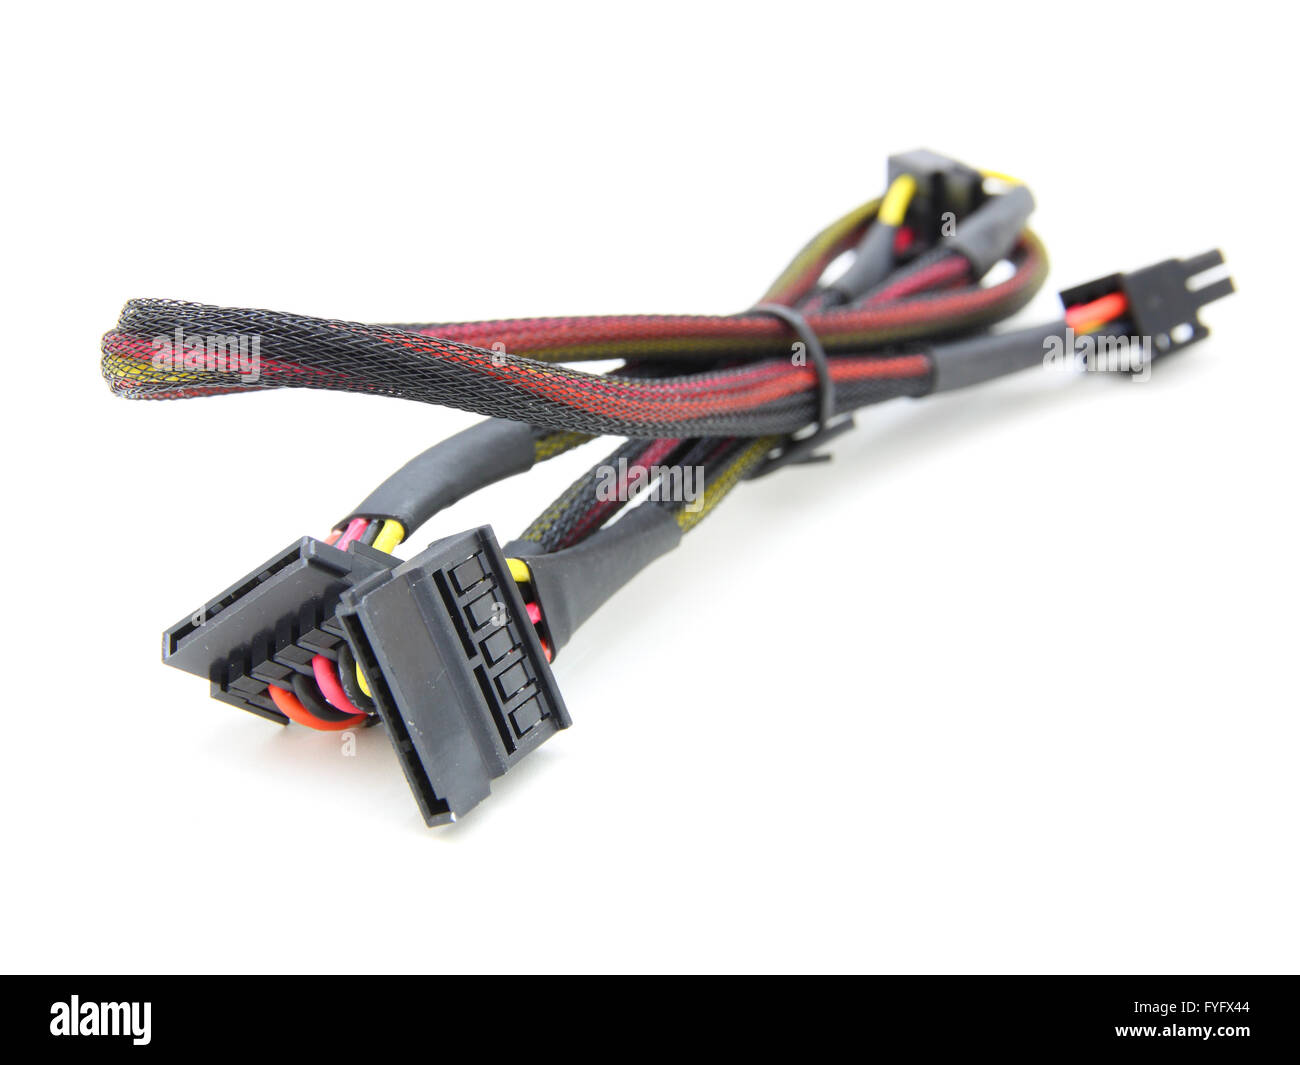 Festplatte-Stromkabel mit elektronischen Kabel Stockfoto